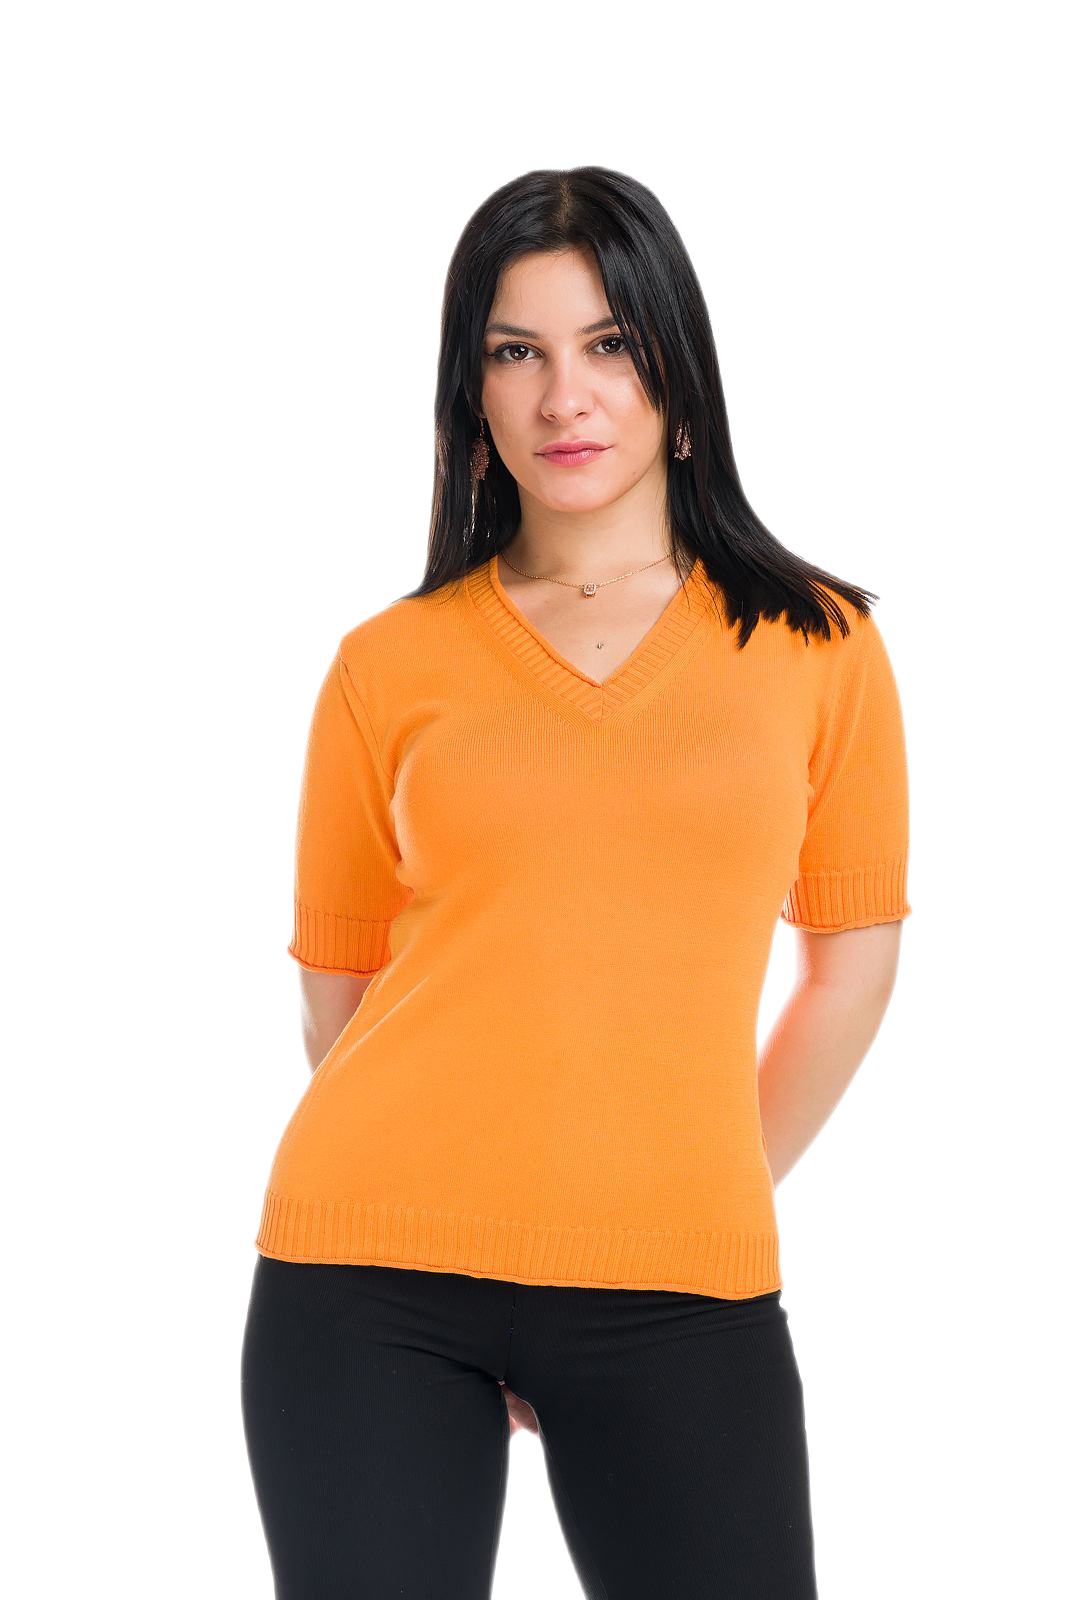 maglietta donna a manica corta estiva in cotone arancione